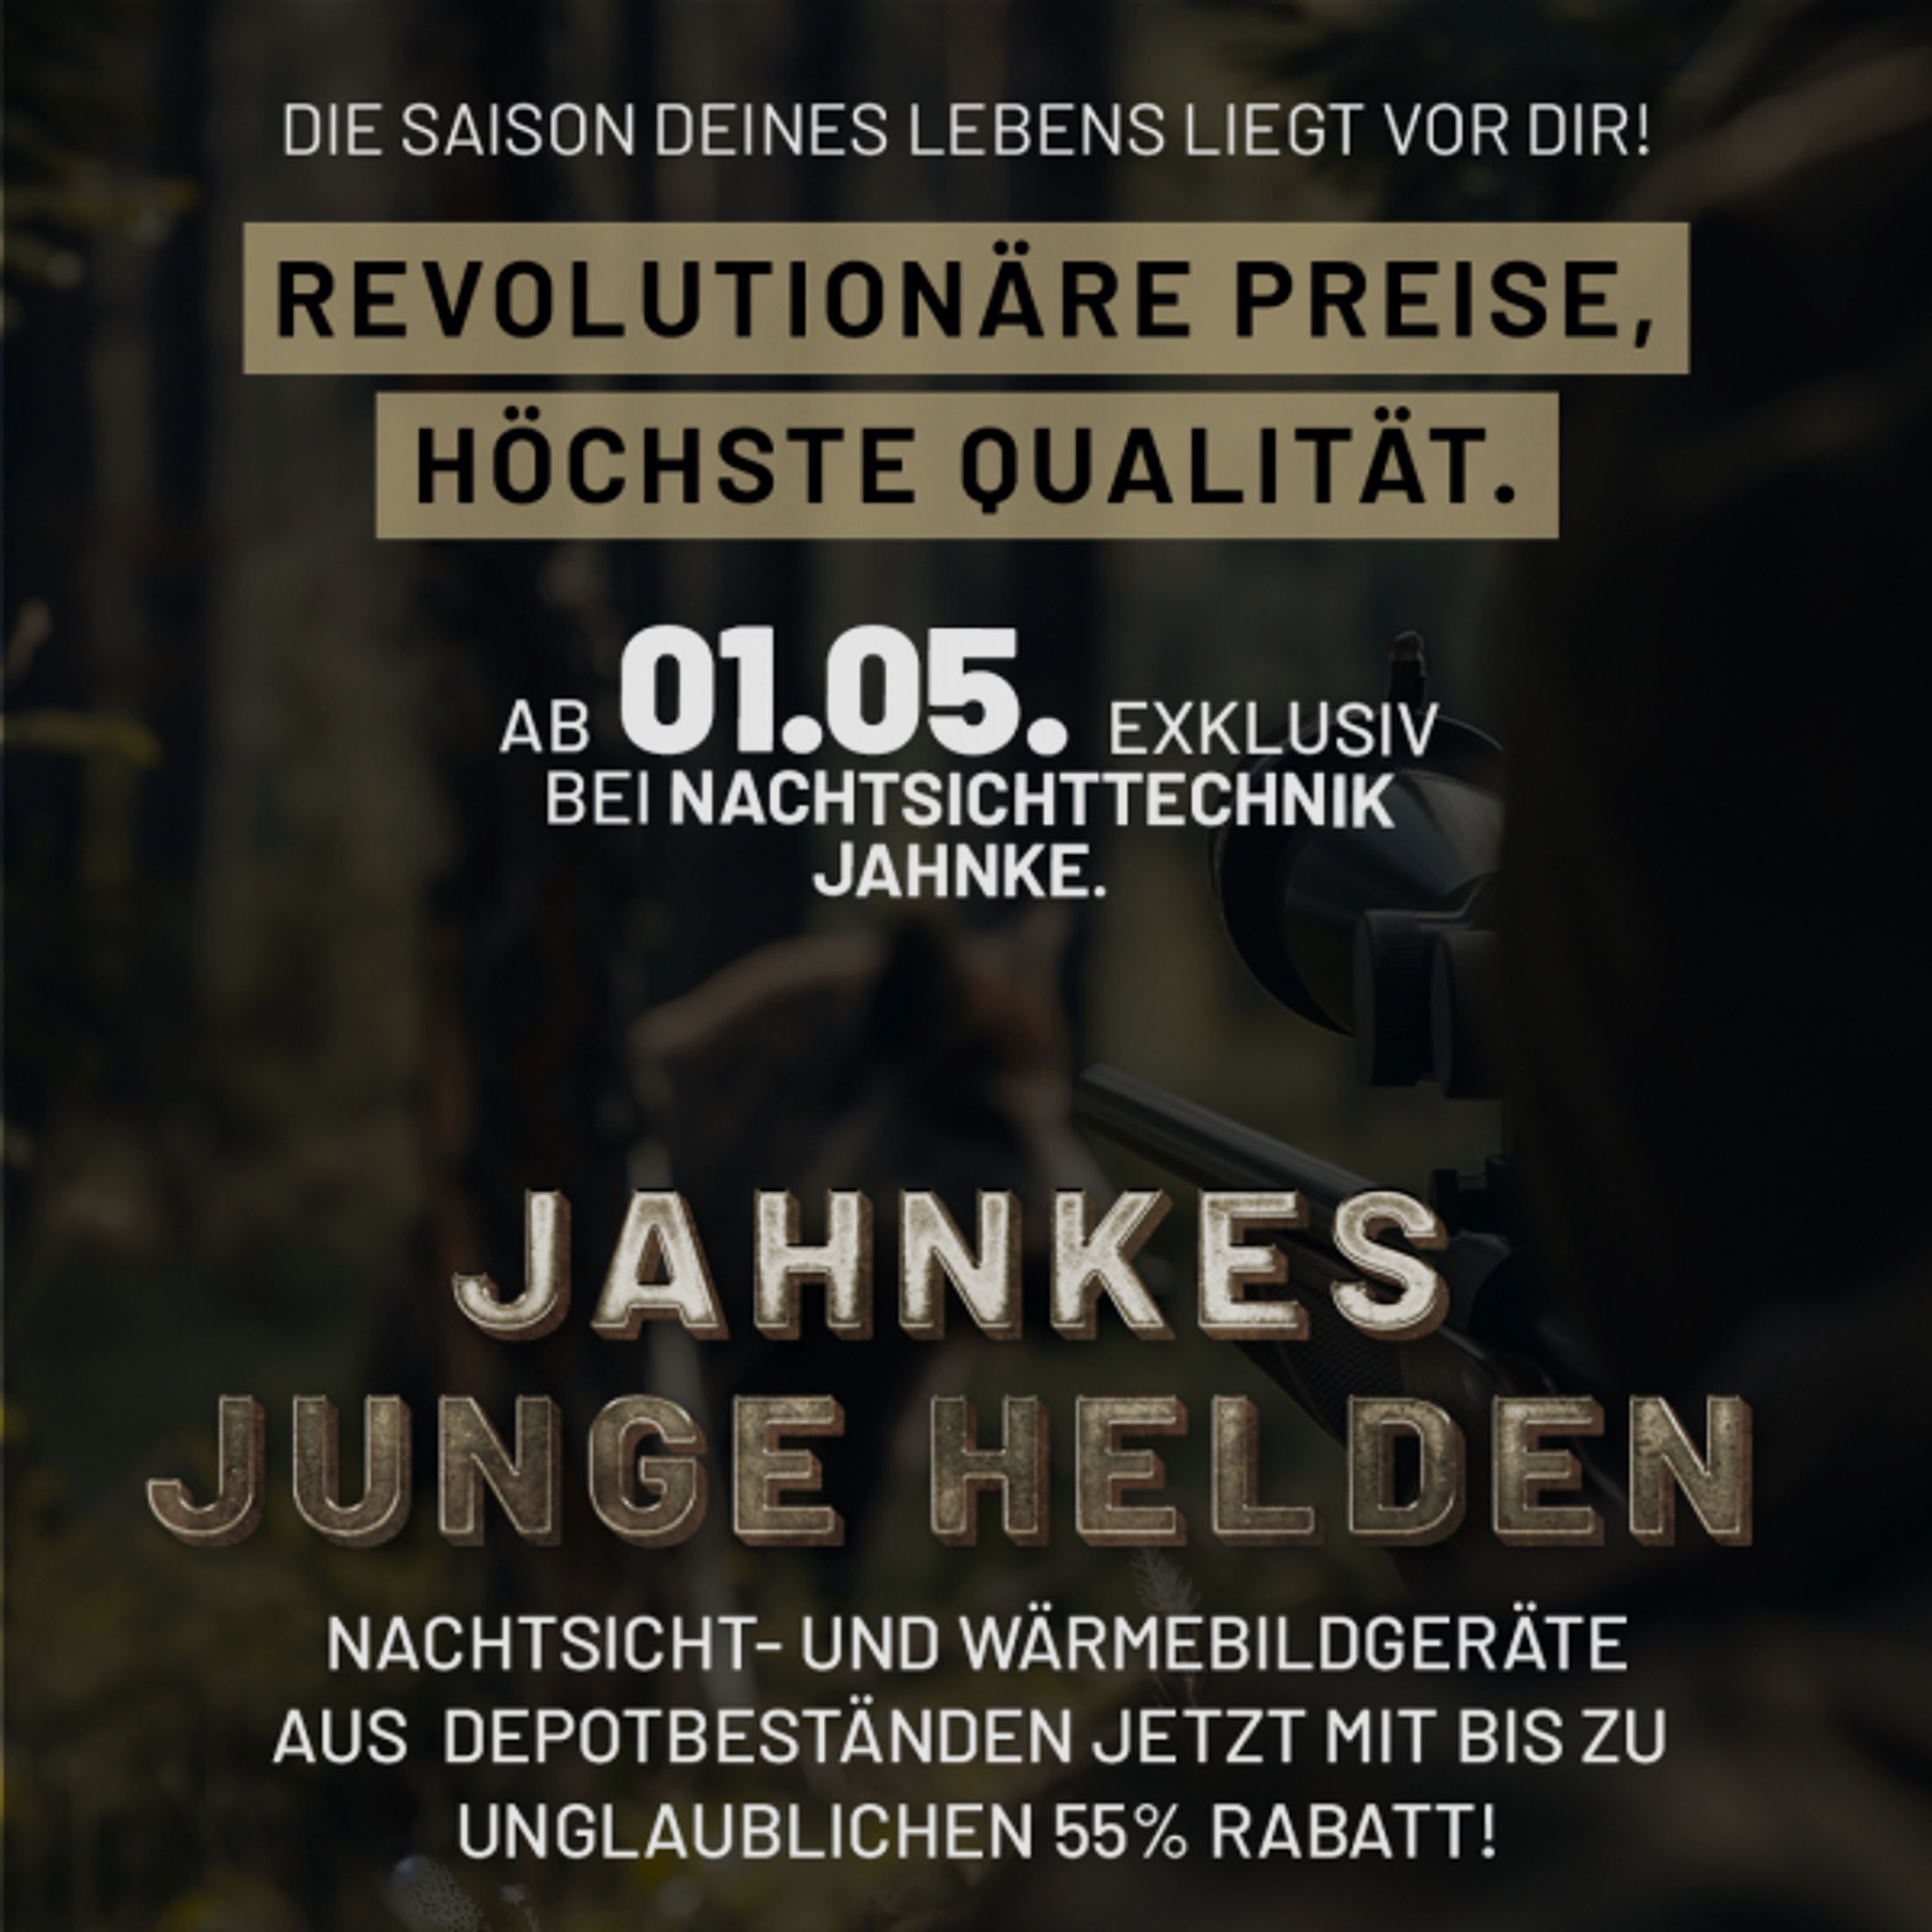 DJ-8 NSV 1×58 JJH aus der Jahnke Junge Helden" Aktion LK 3 S 2, Jahnke Premium